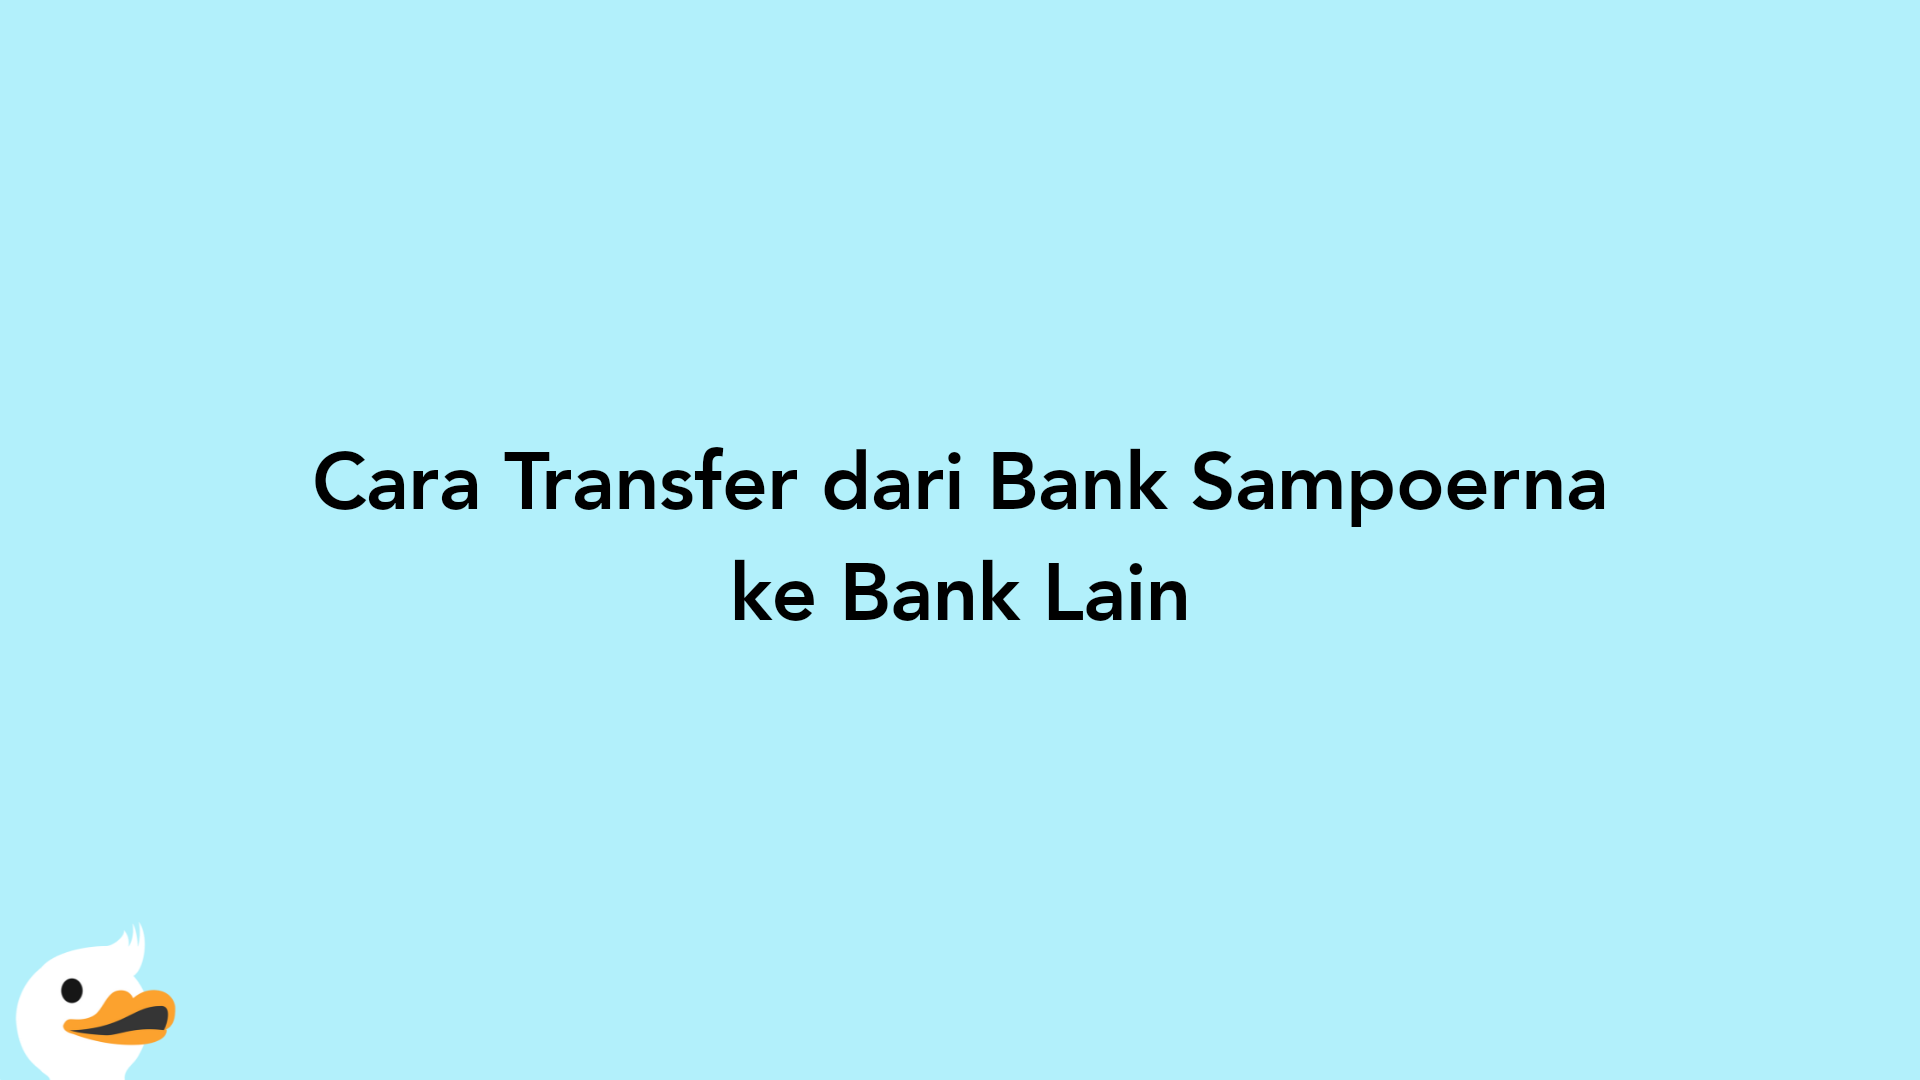 Cara Transfer dari Bank Sampoerna ke Bank Lain